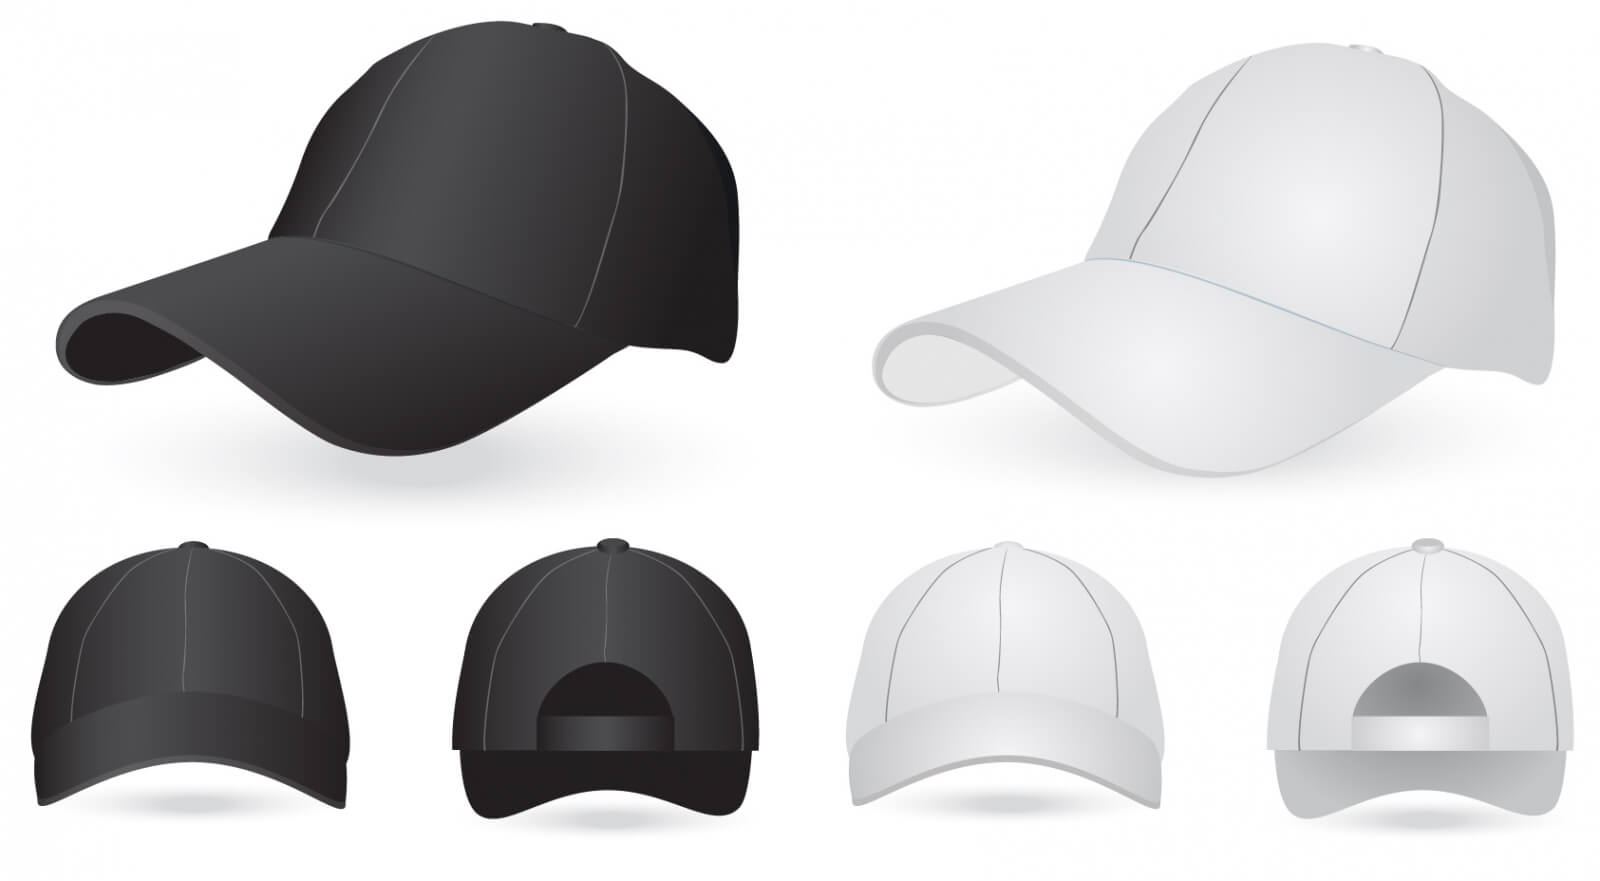 18 Hat Template Vector Images – Bucket Hat Template Regarding 5 Panel Hat Template